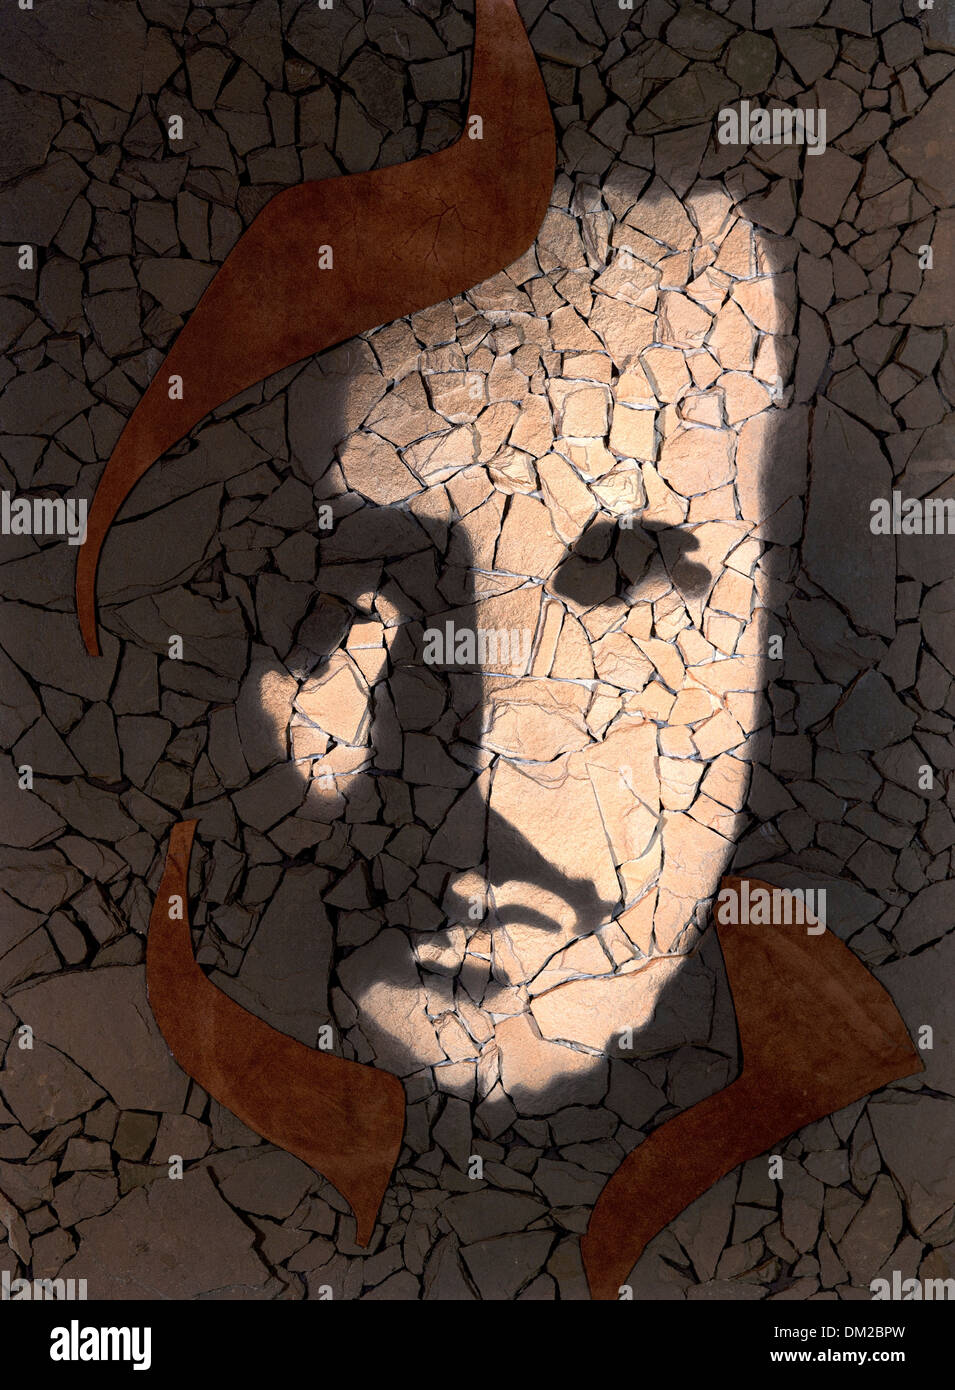 Foto hecha por mí mostrando un rostro masculino pintado sobre piezas de piedra fragmentada Foto de stock